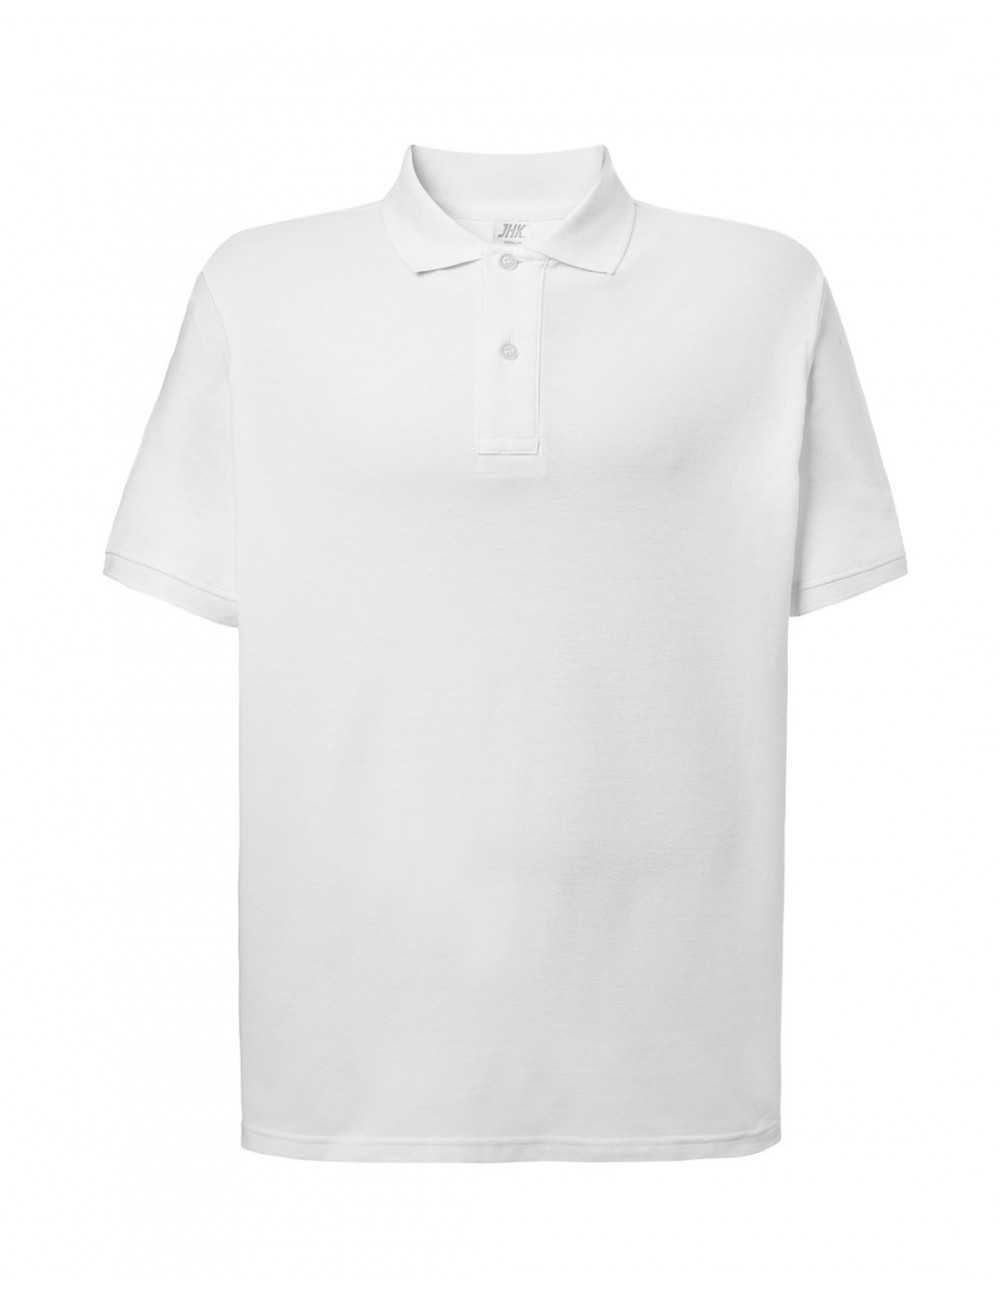 Men`s polo shirts polo pora 210 wh white Jhk